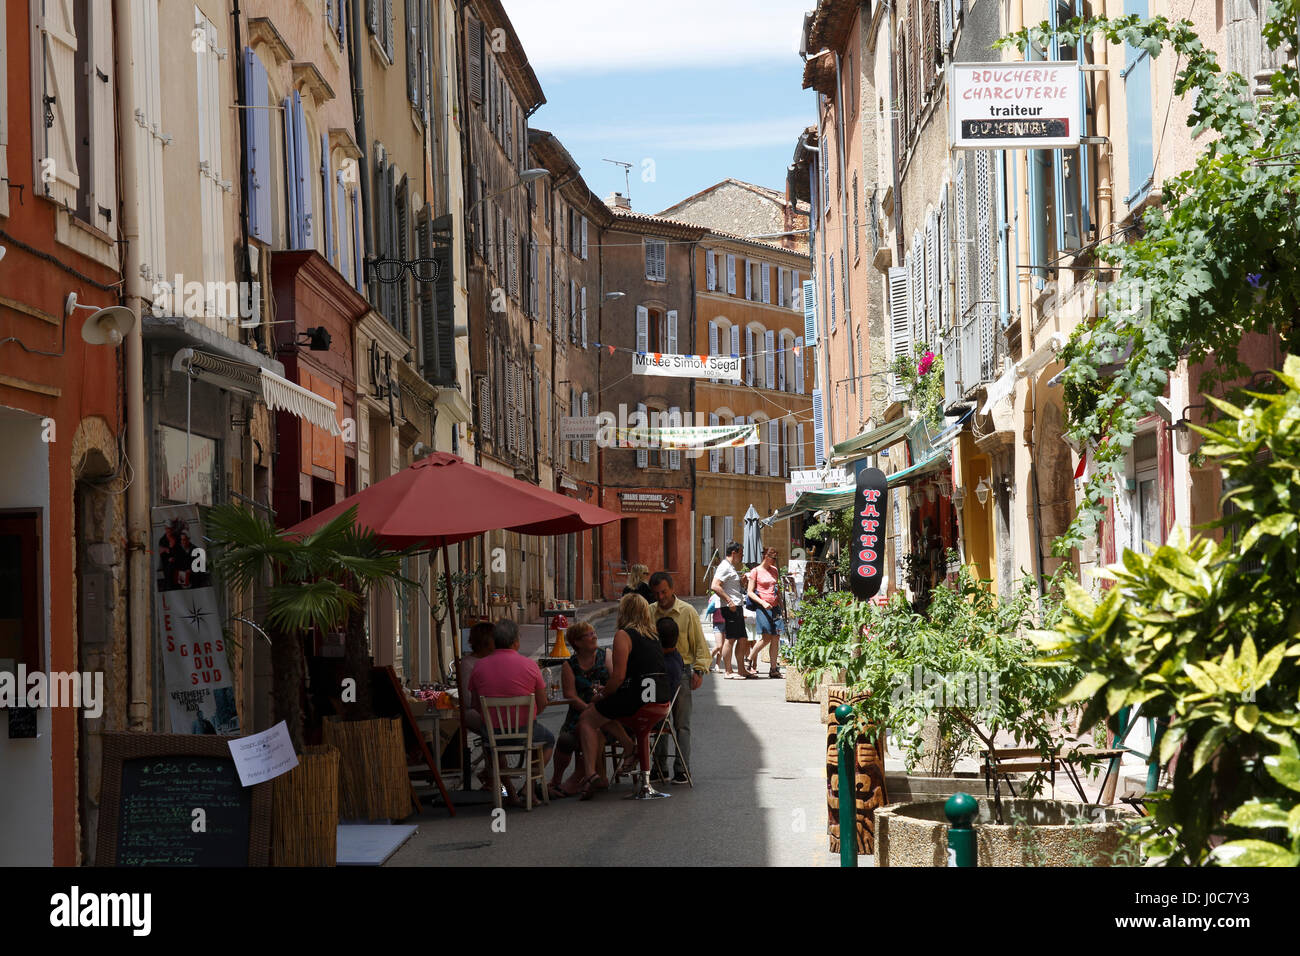 Alley, Aups, Var department, Provence-Alpes-Côte d'Azur, France Stock Photo